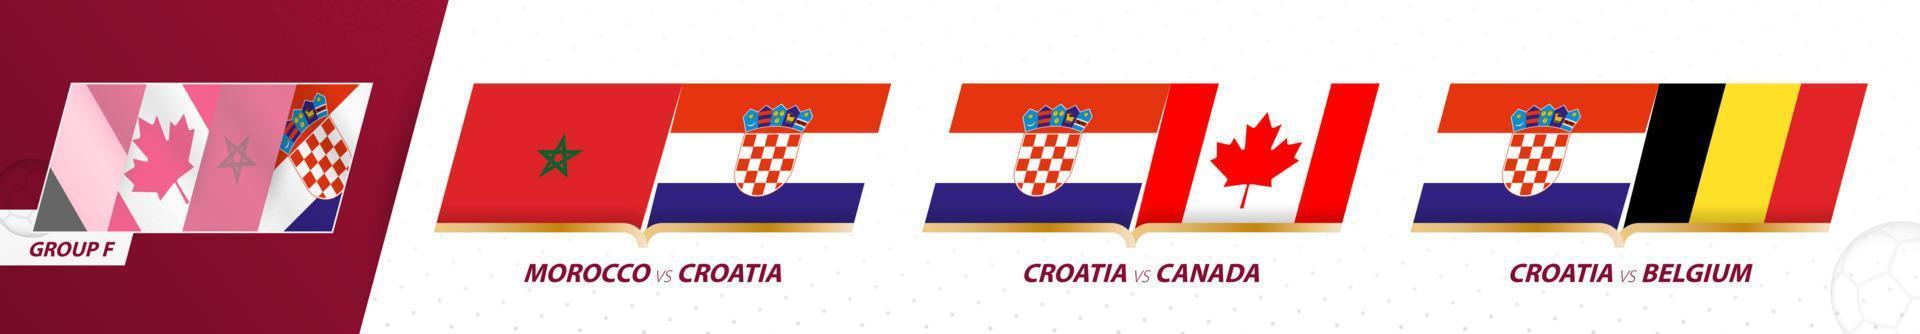 matchs de l'équipe de football de croatie dans le groupe f du tournoi international de football 2022. vecteur